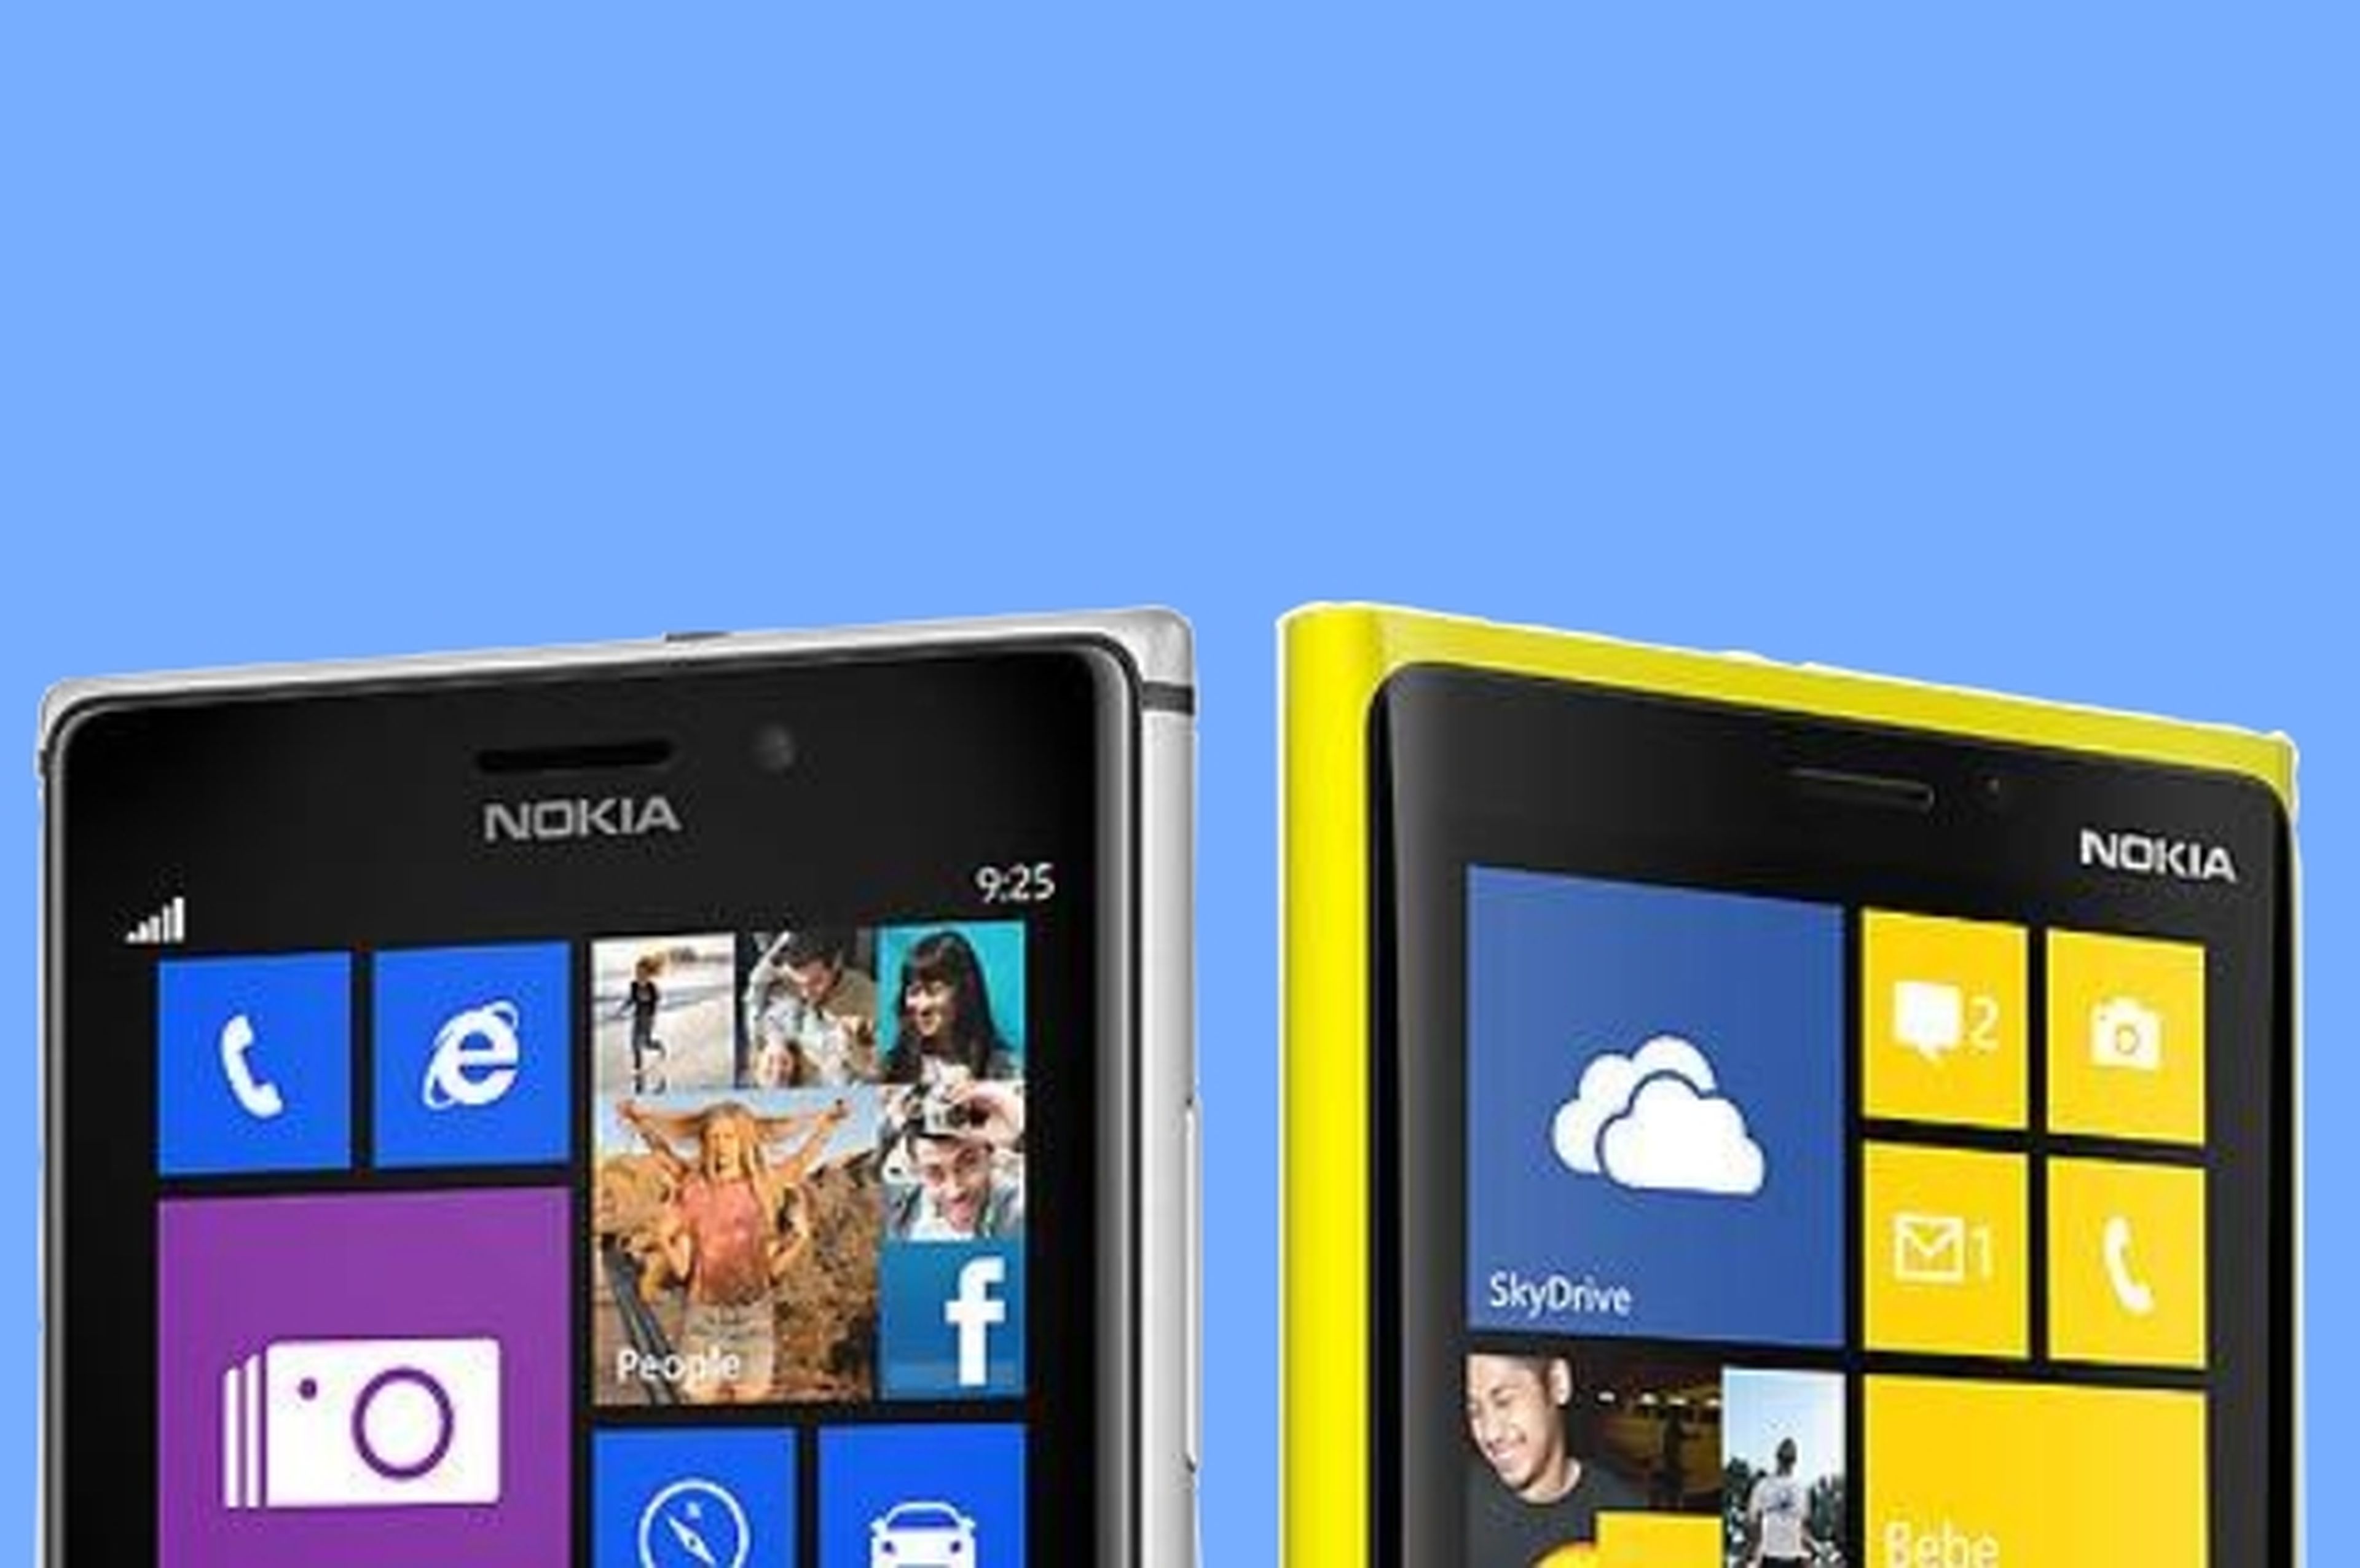 Nokia Bandit, un phablet de 6 pulgadas con Windows Phone